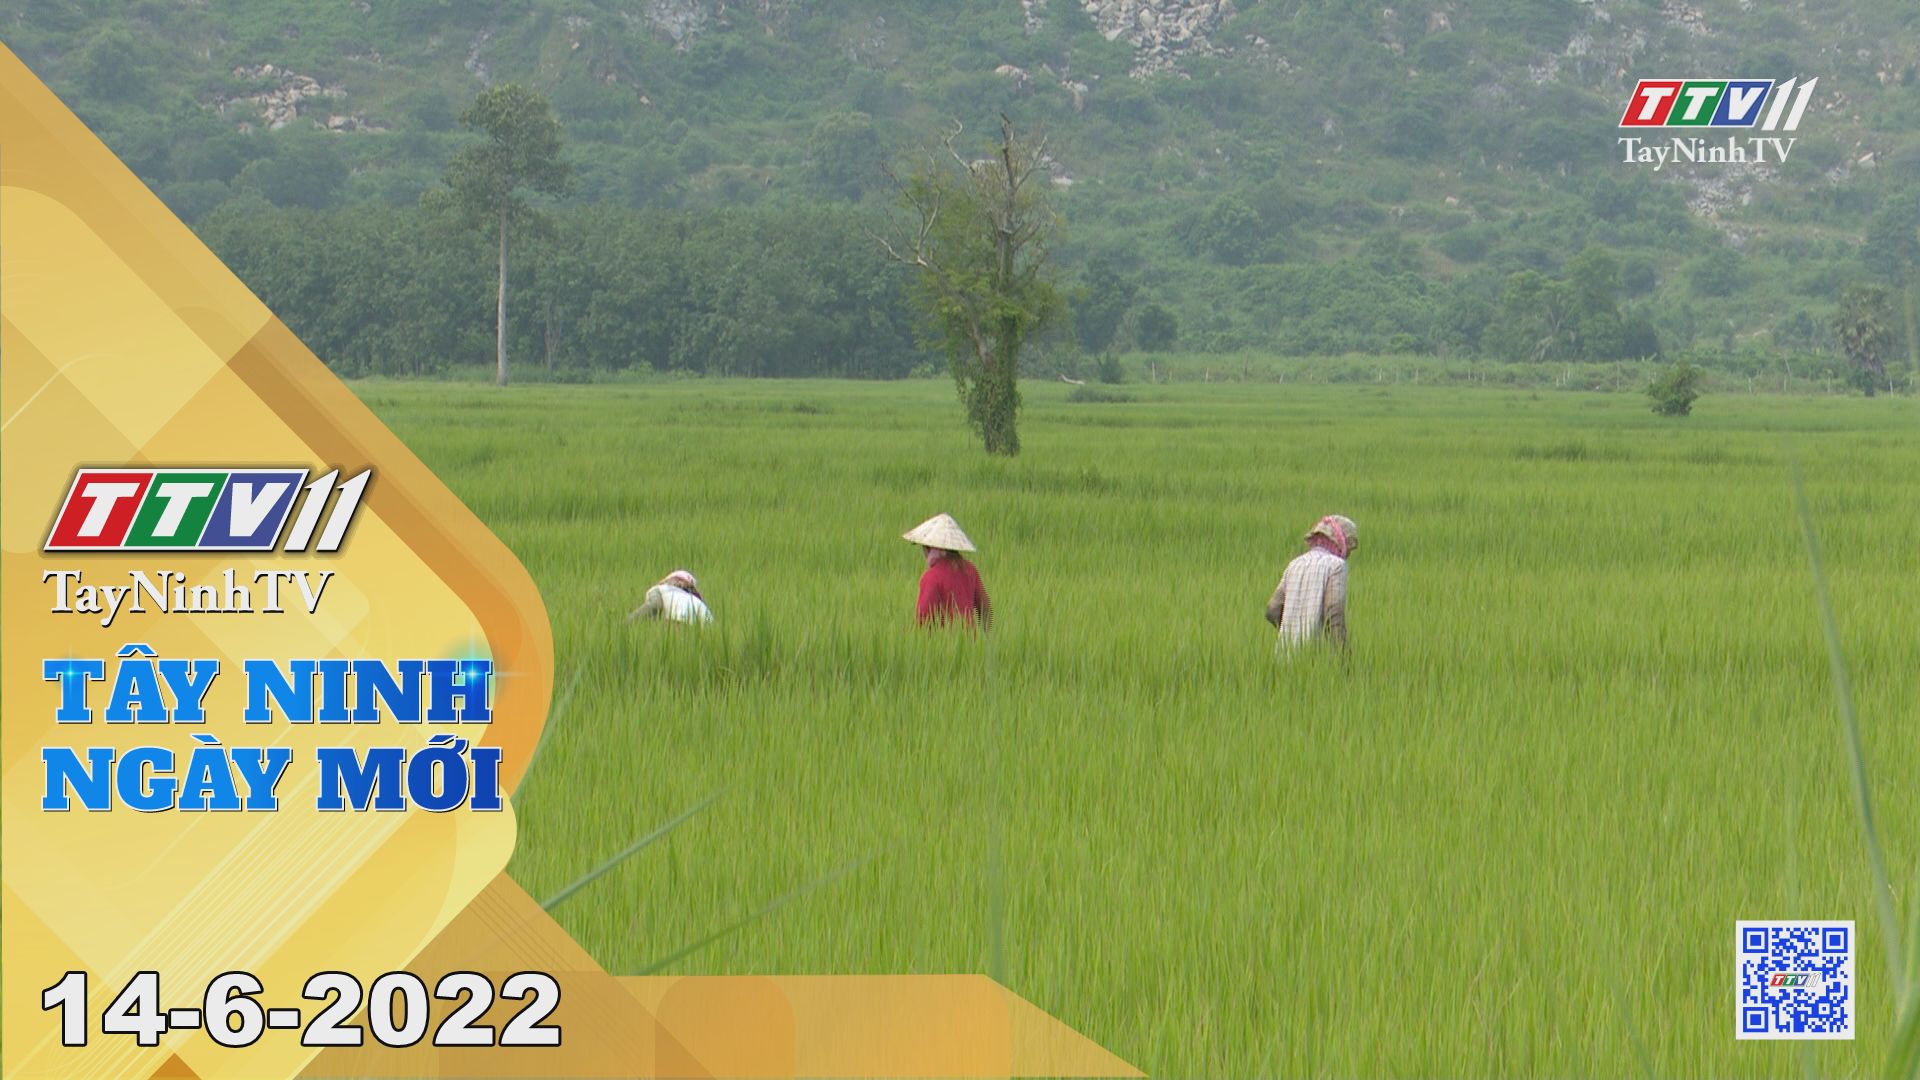 Tây Ninh ngày mới 14-6-2022 | Tin tức hôm nay | TayNinhTV